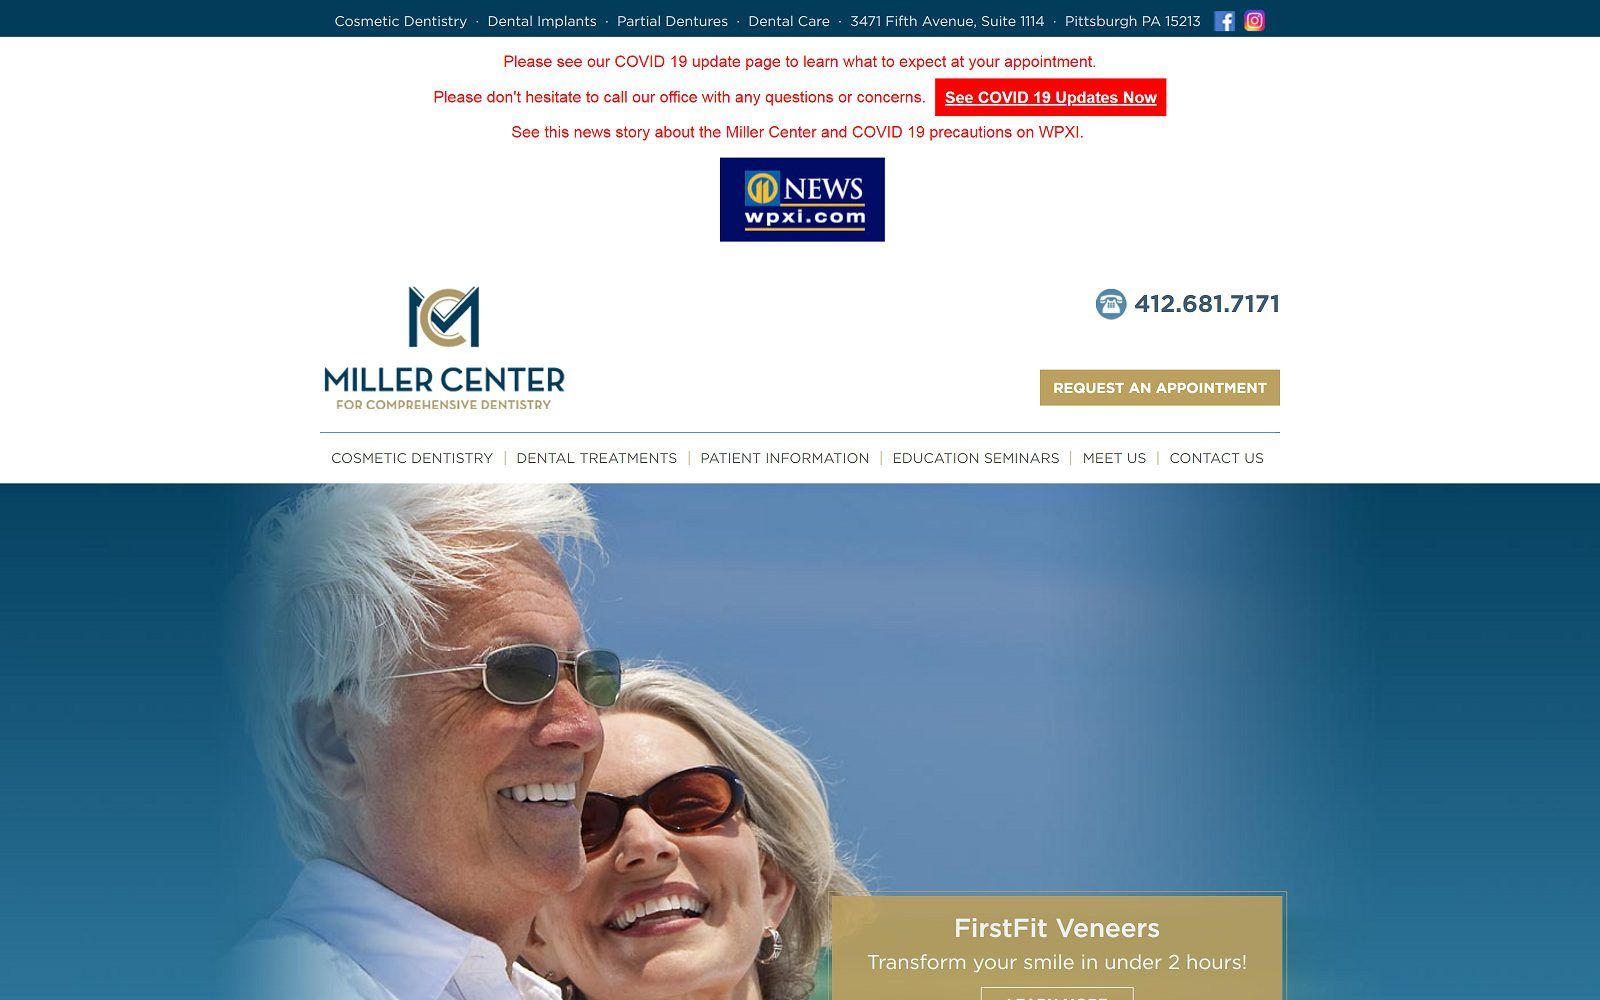 The screenshot of miller center for comprehensive dentistry - stephen m. Miller, dmd, magd website